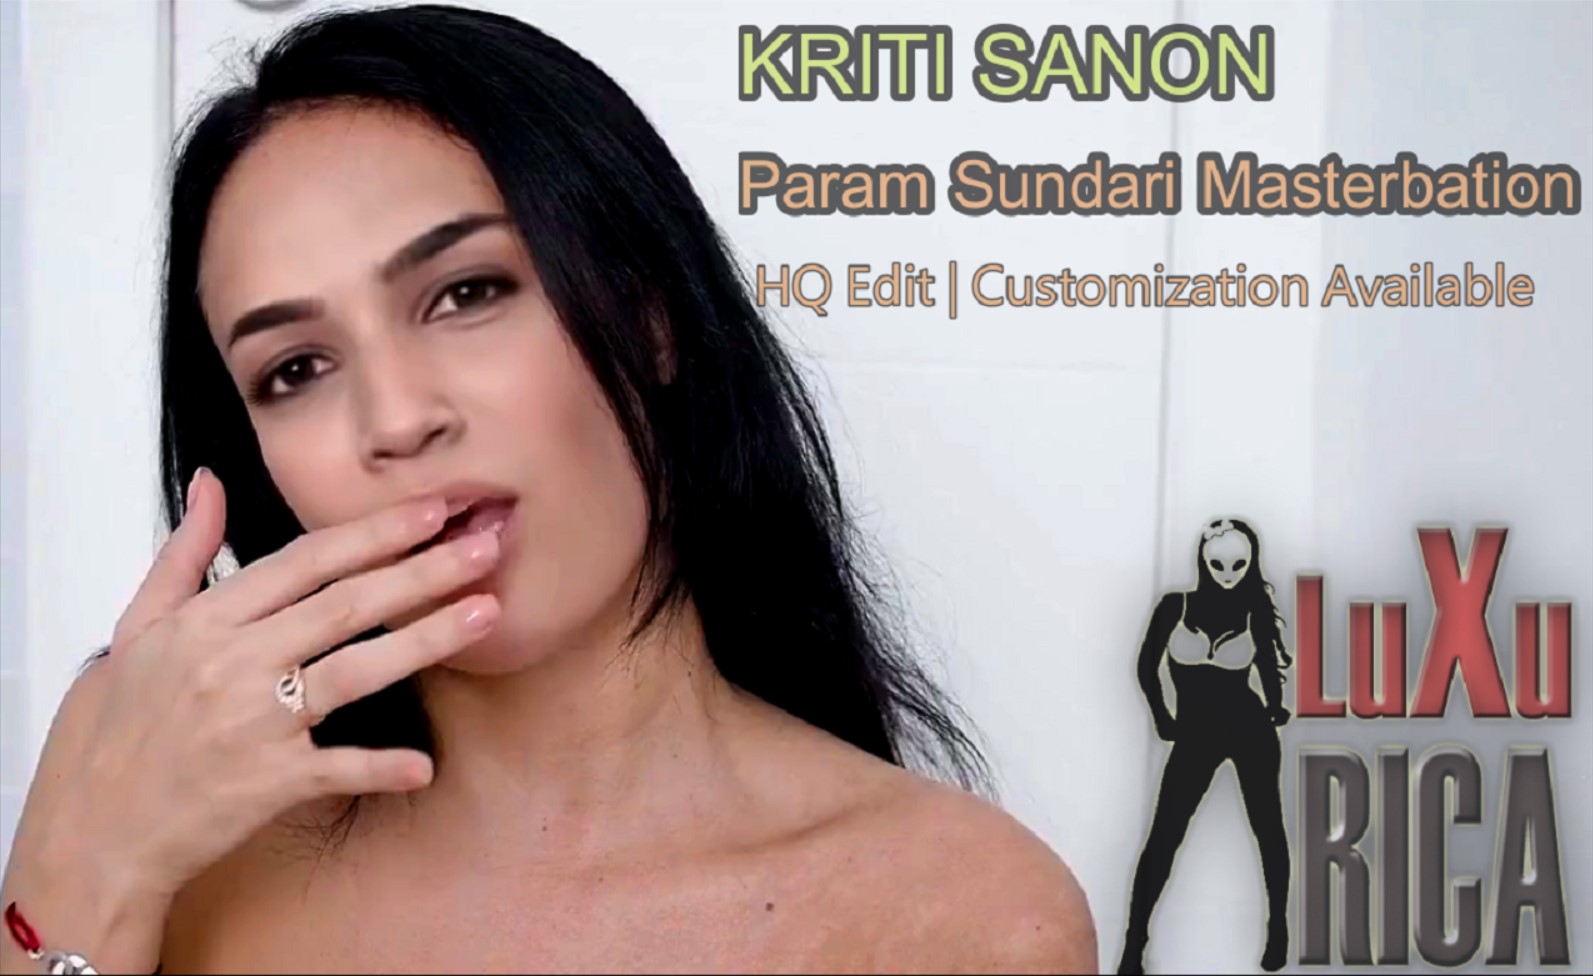 (◕‿◕✿) [LUXURICA] Kriti Sanon's Hot Milf Solo Masterbation [Customization Available]